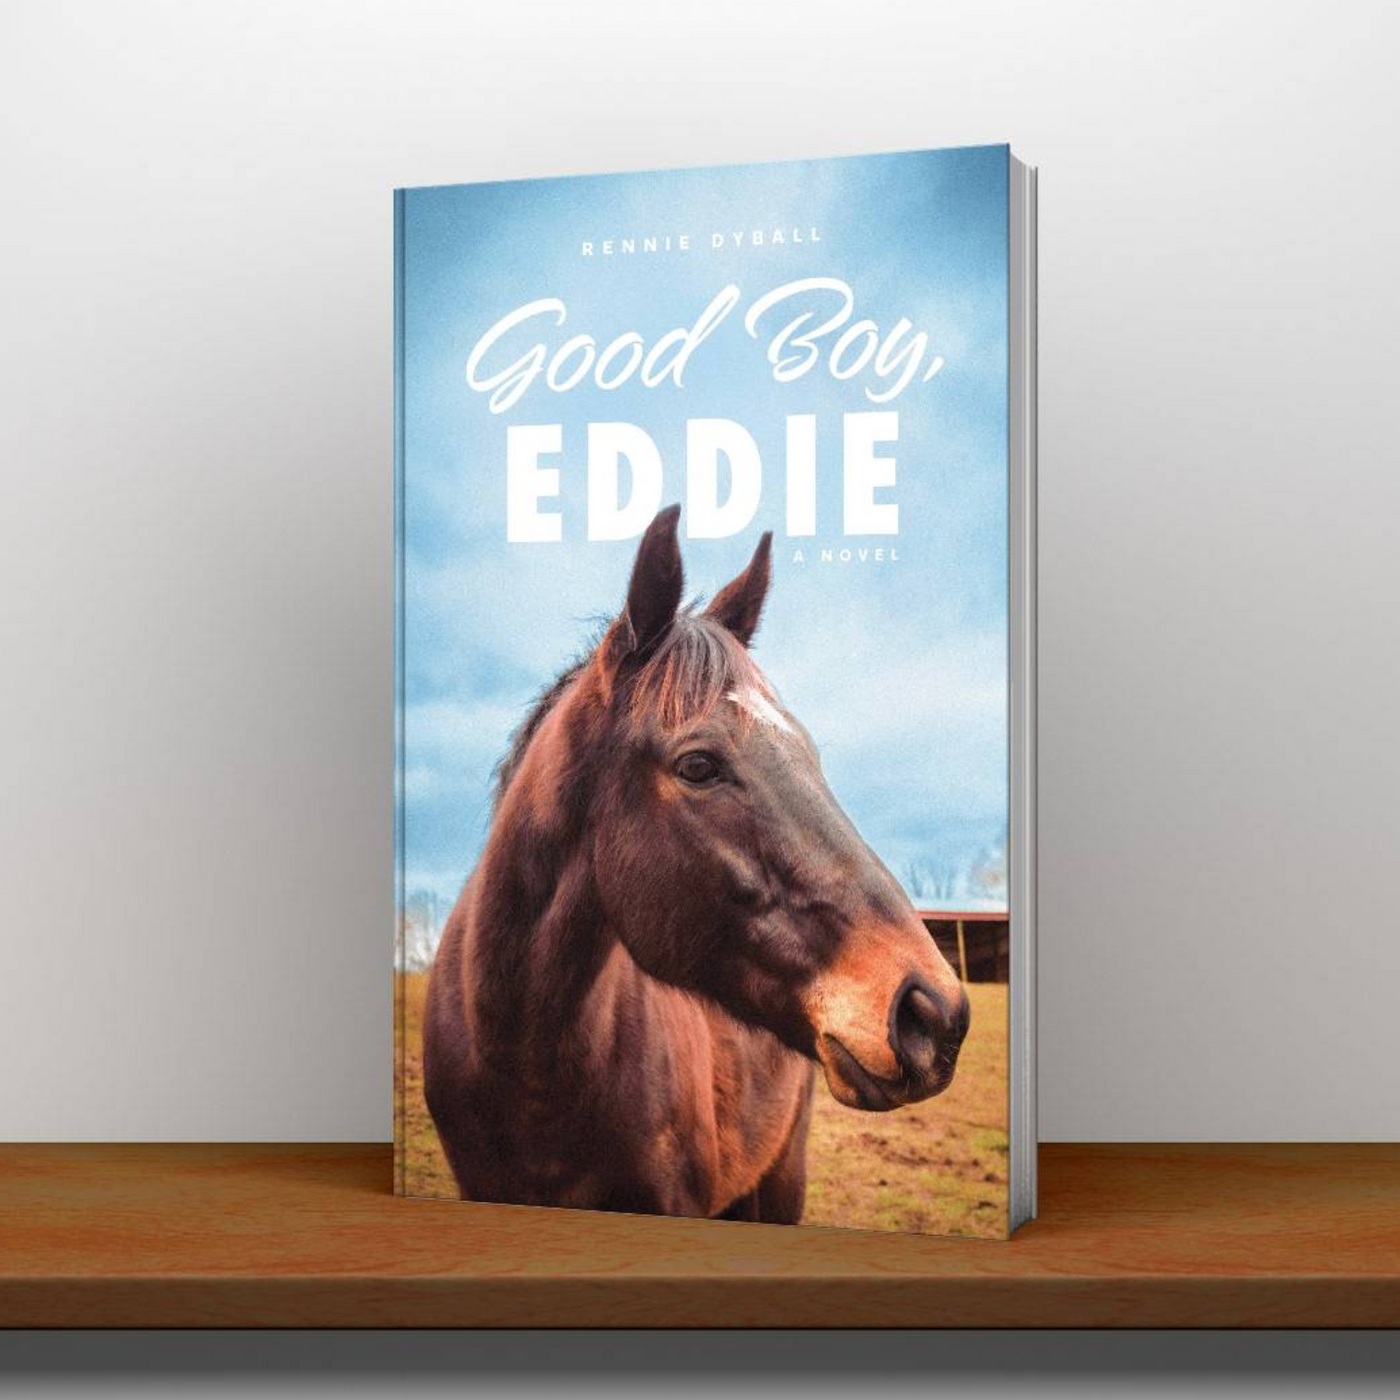 Good Boy, Eddie.  A novel by Rennie Dyball